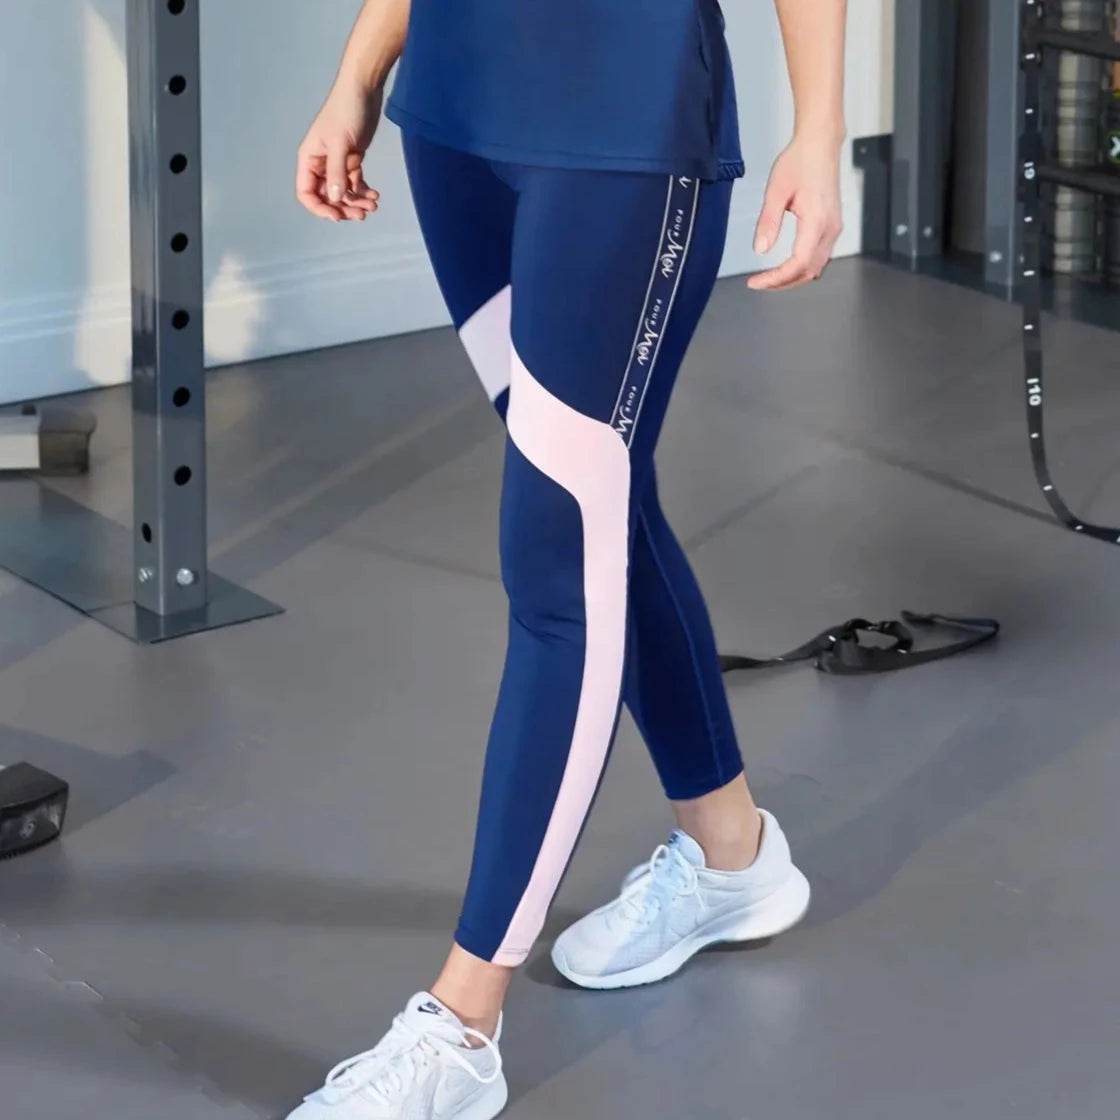 Power Workout Leggings - Navy Blue, Women's Leggings